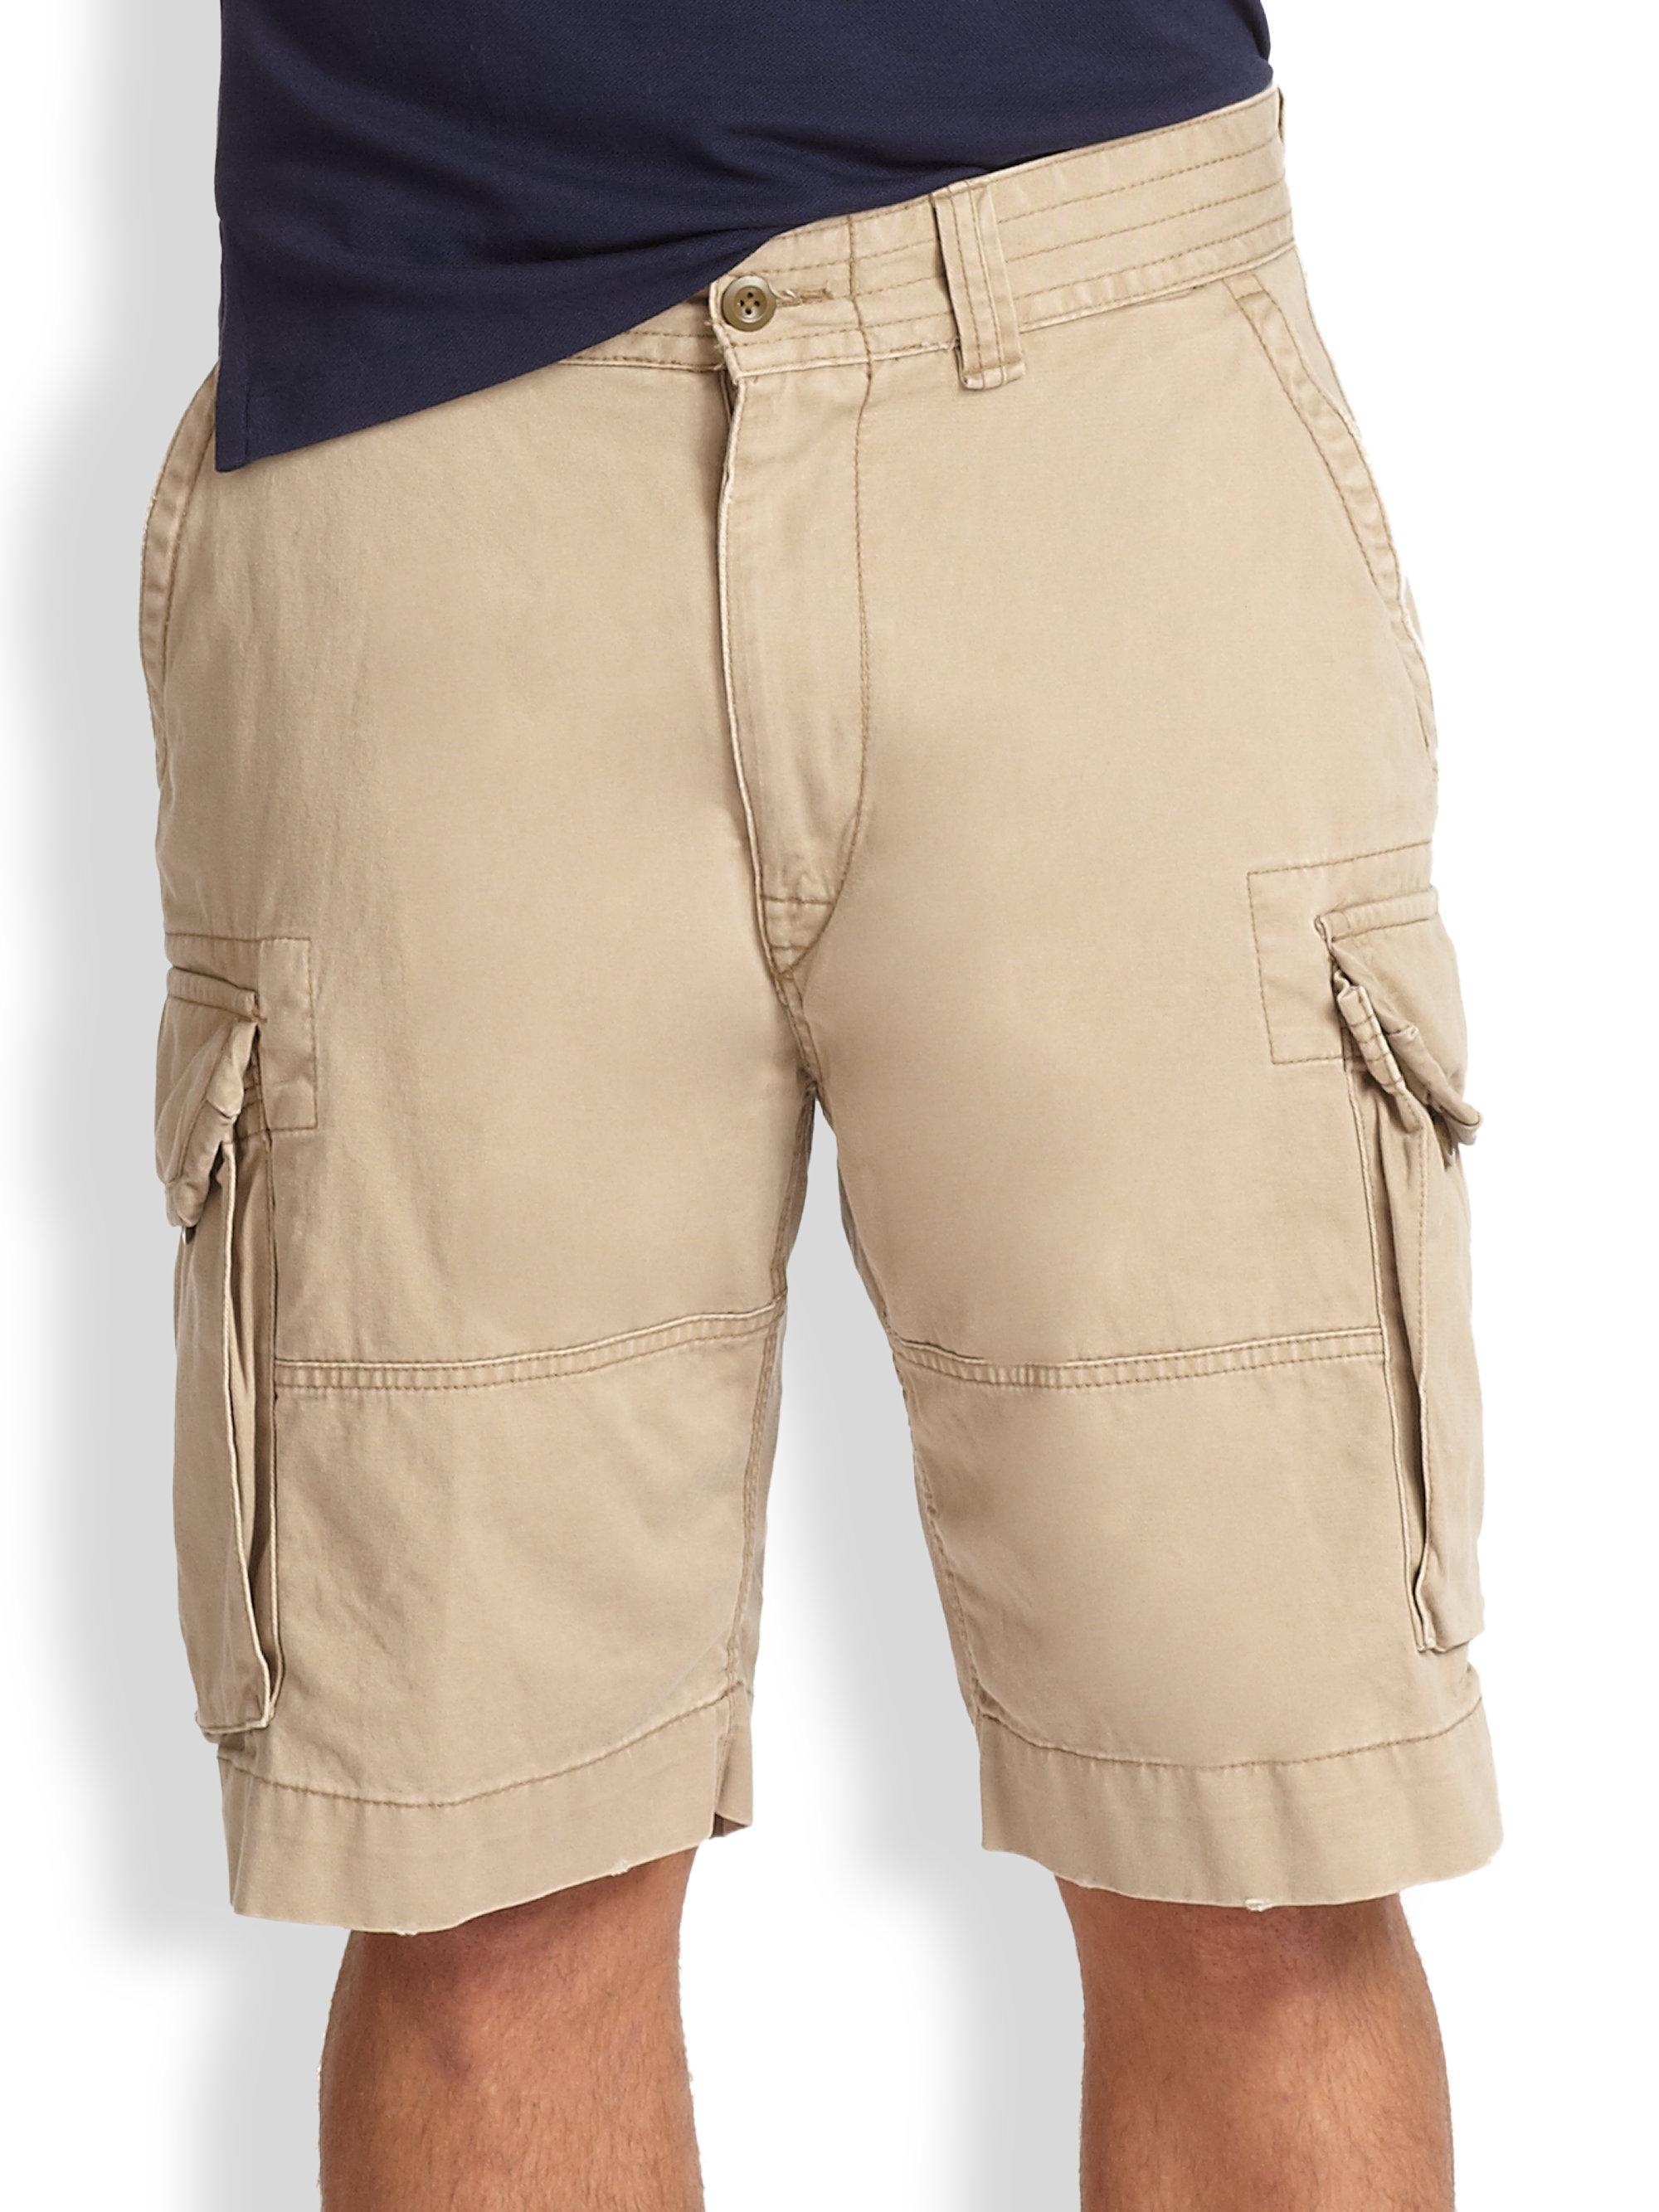 polo gellar cargo shorts